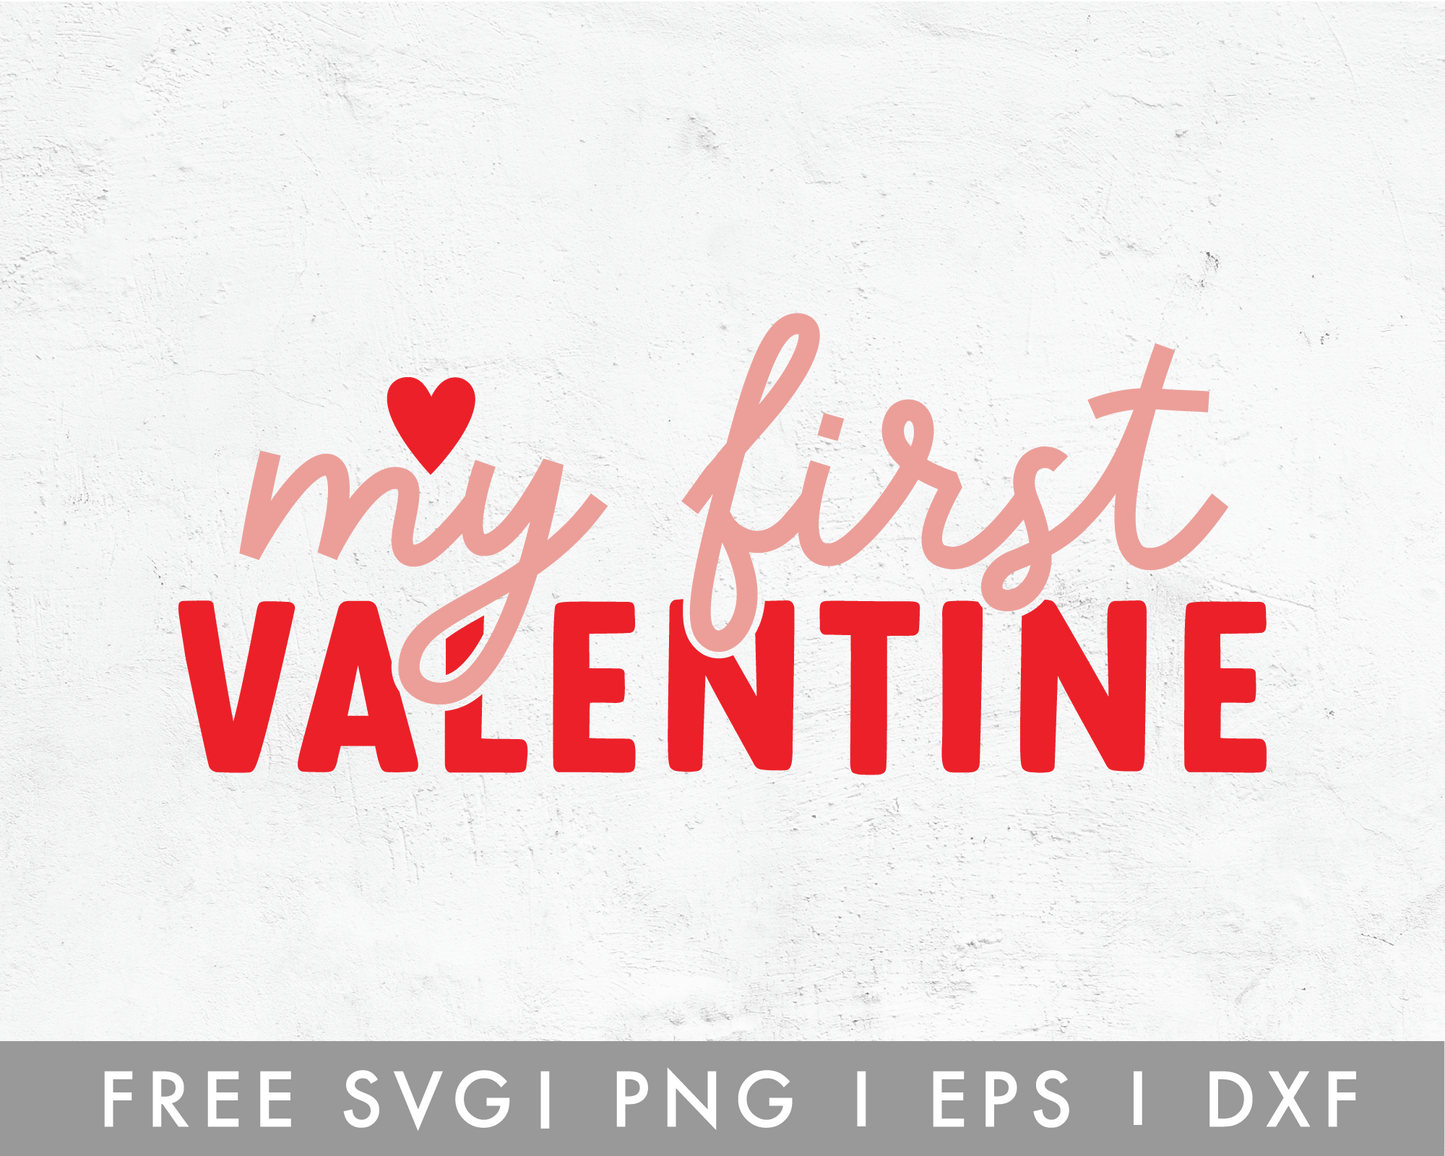 FREE My First Valentine SVG